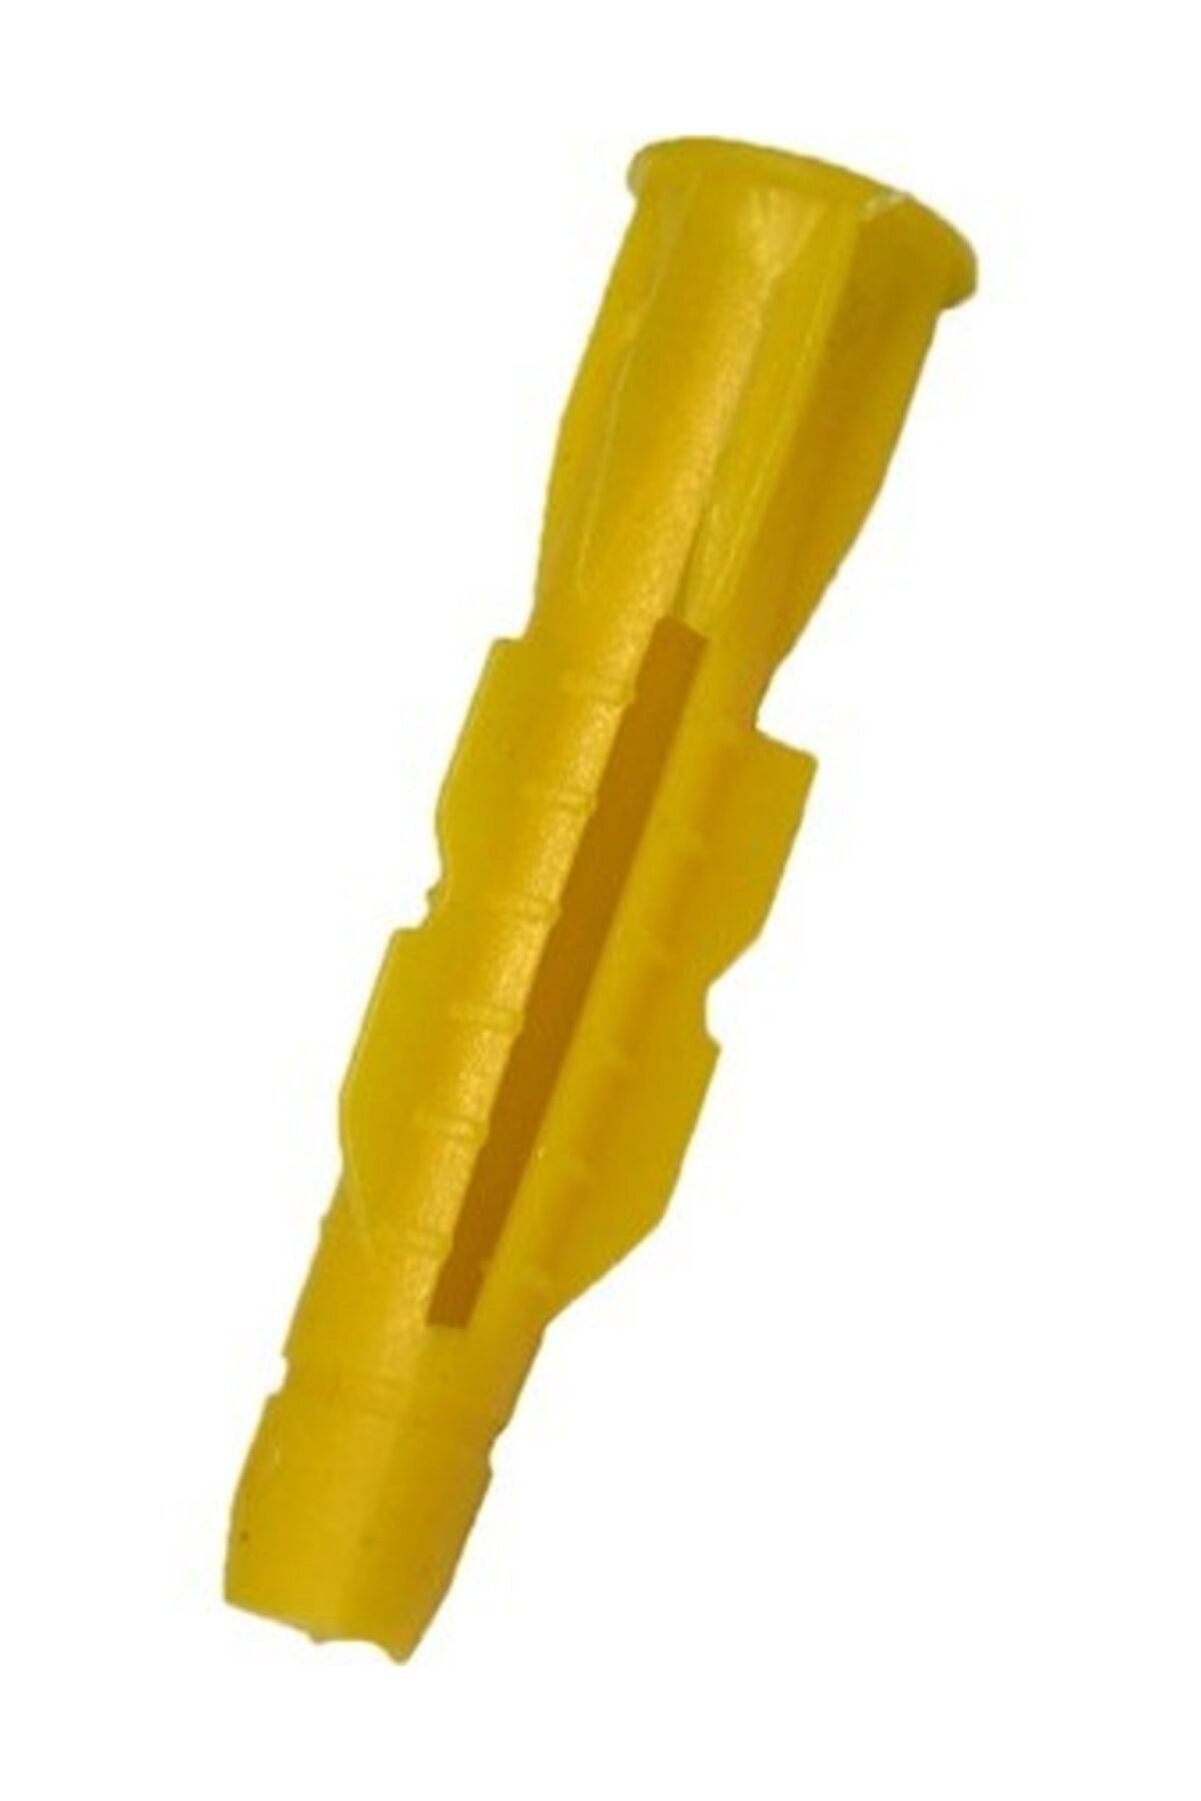 Plastik Roket Dübel 10 lik (500 Adet) sarı 10 mm hırdavat vida